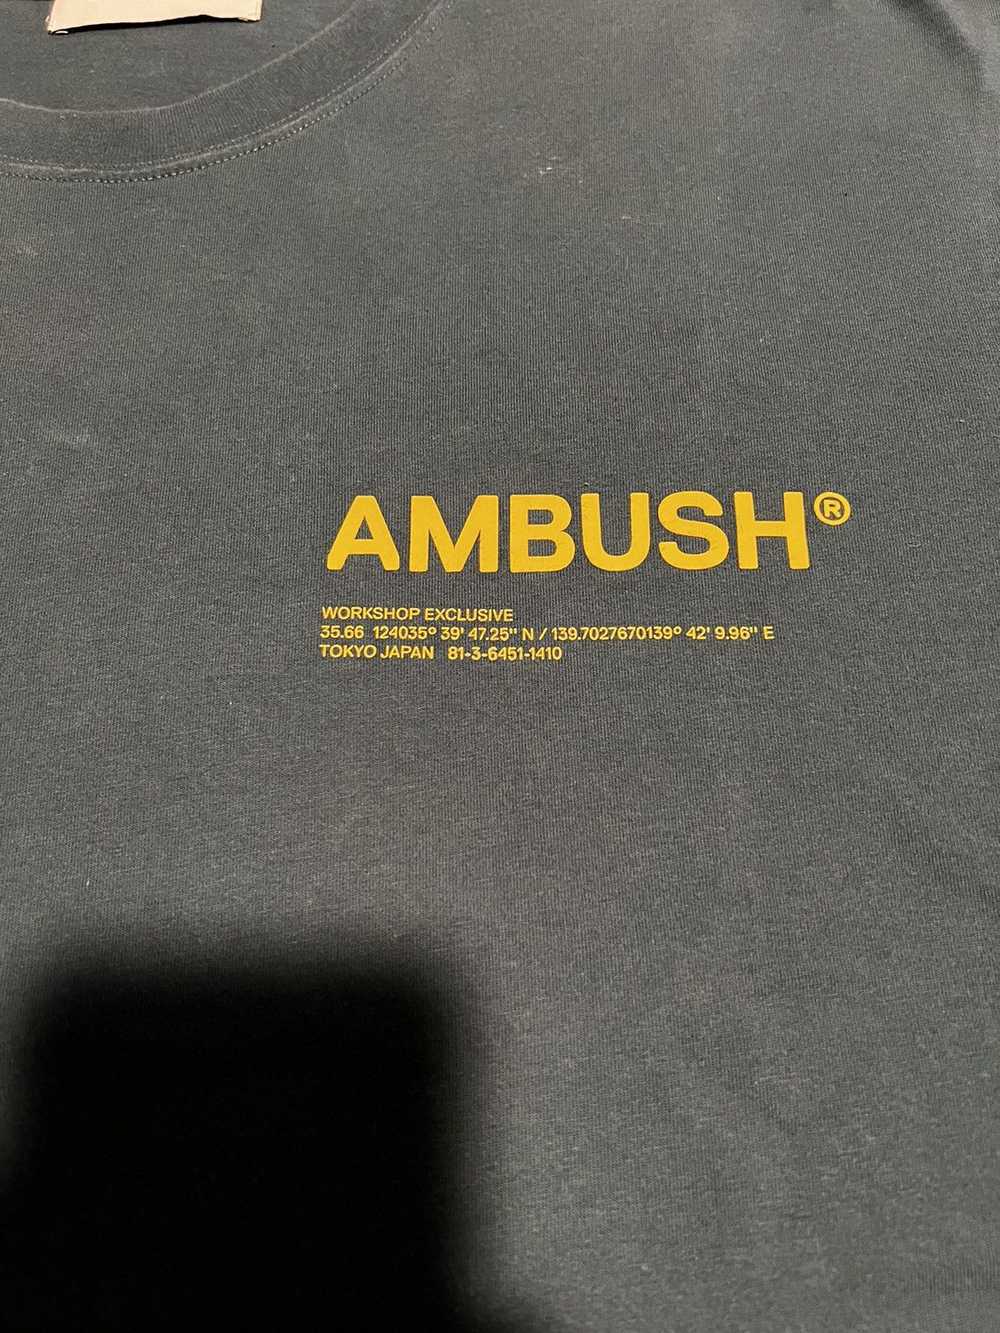 Ambush Design Ambush Workshop Japan Exclusive Tee - image 2